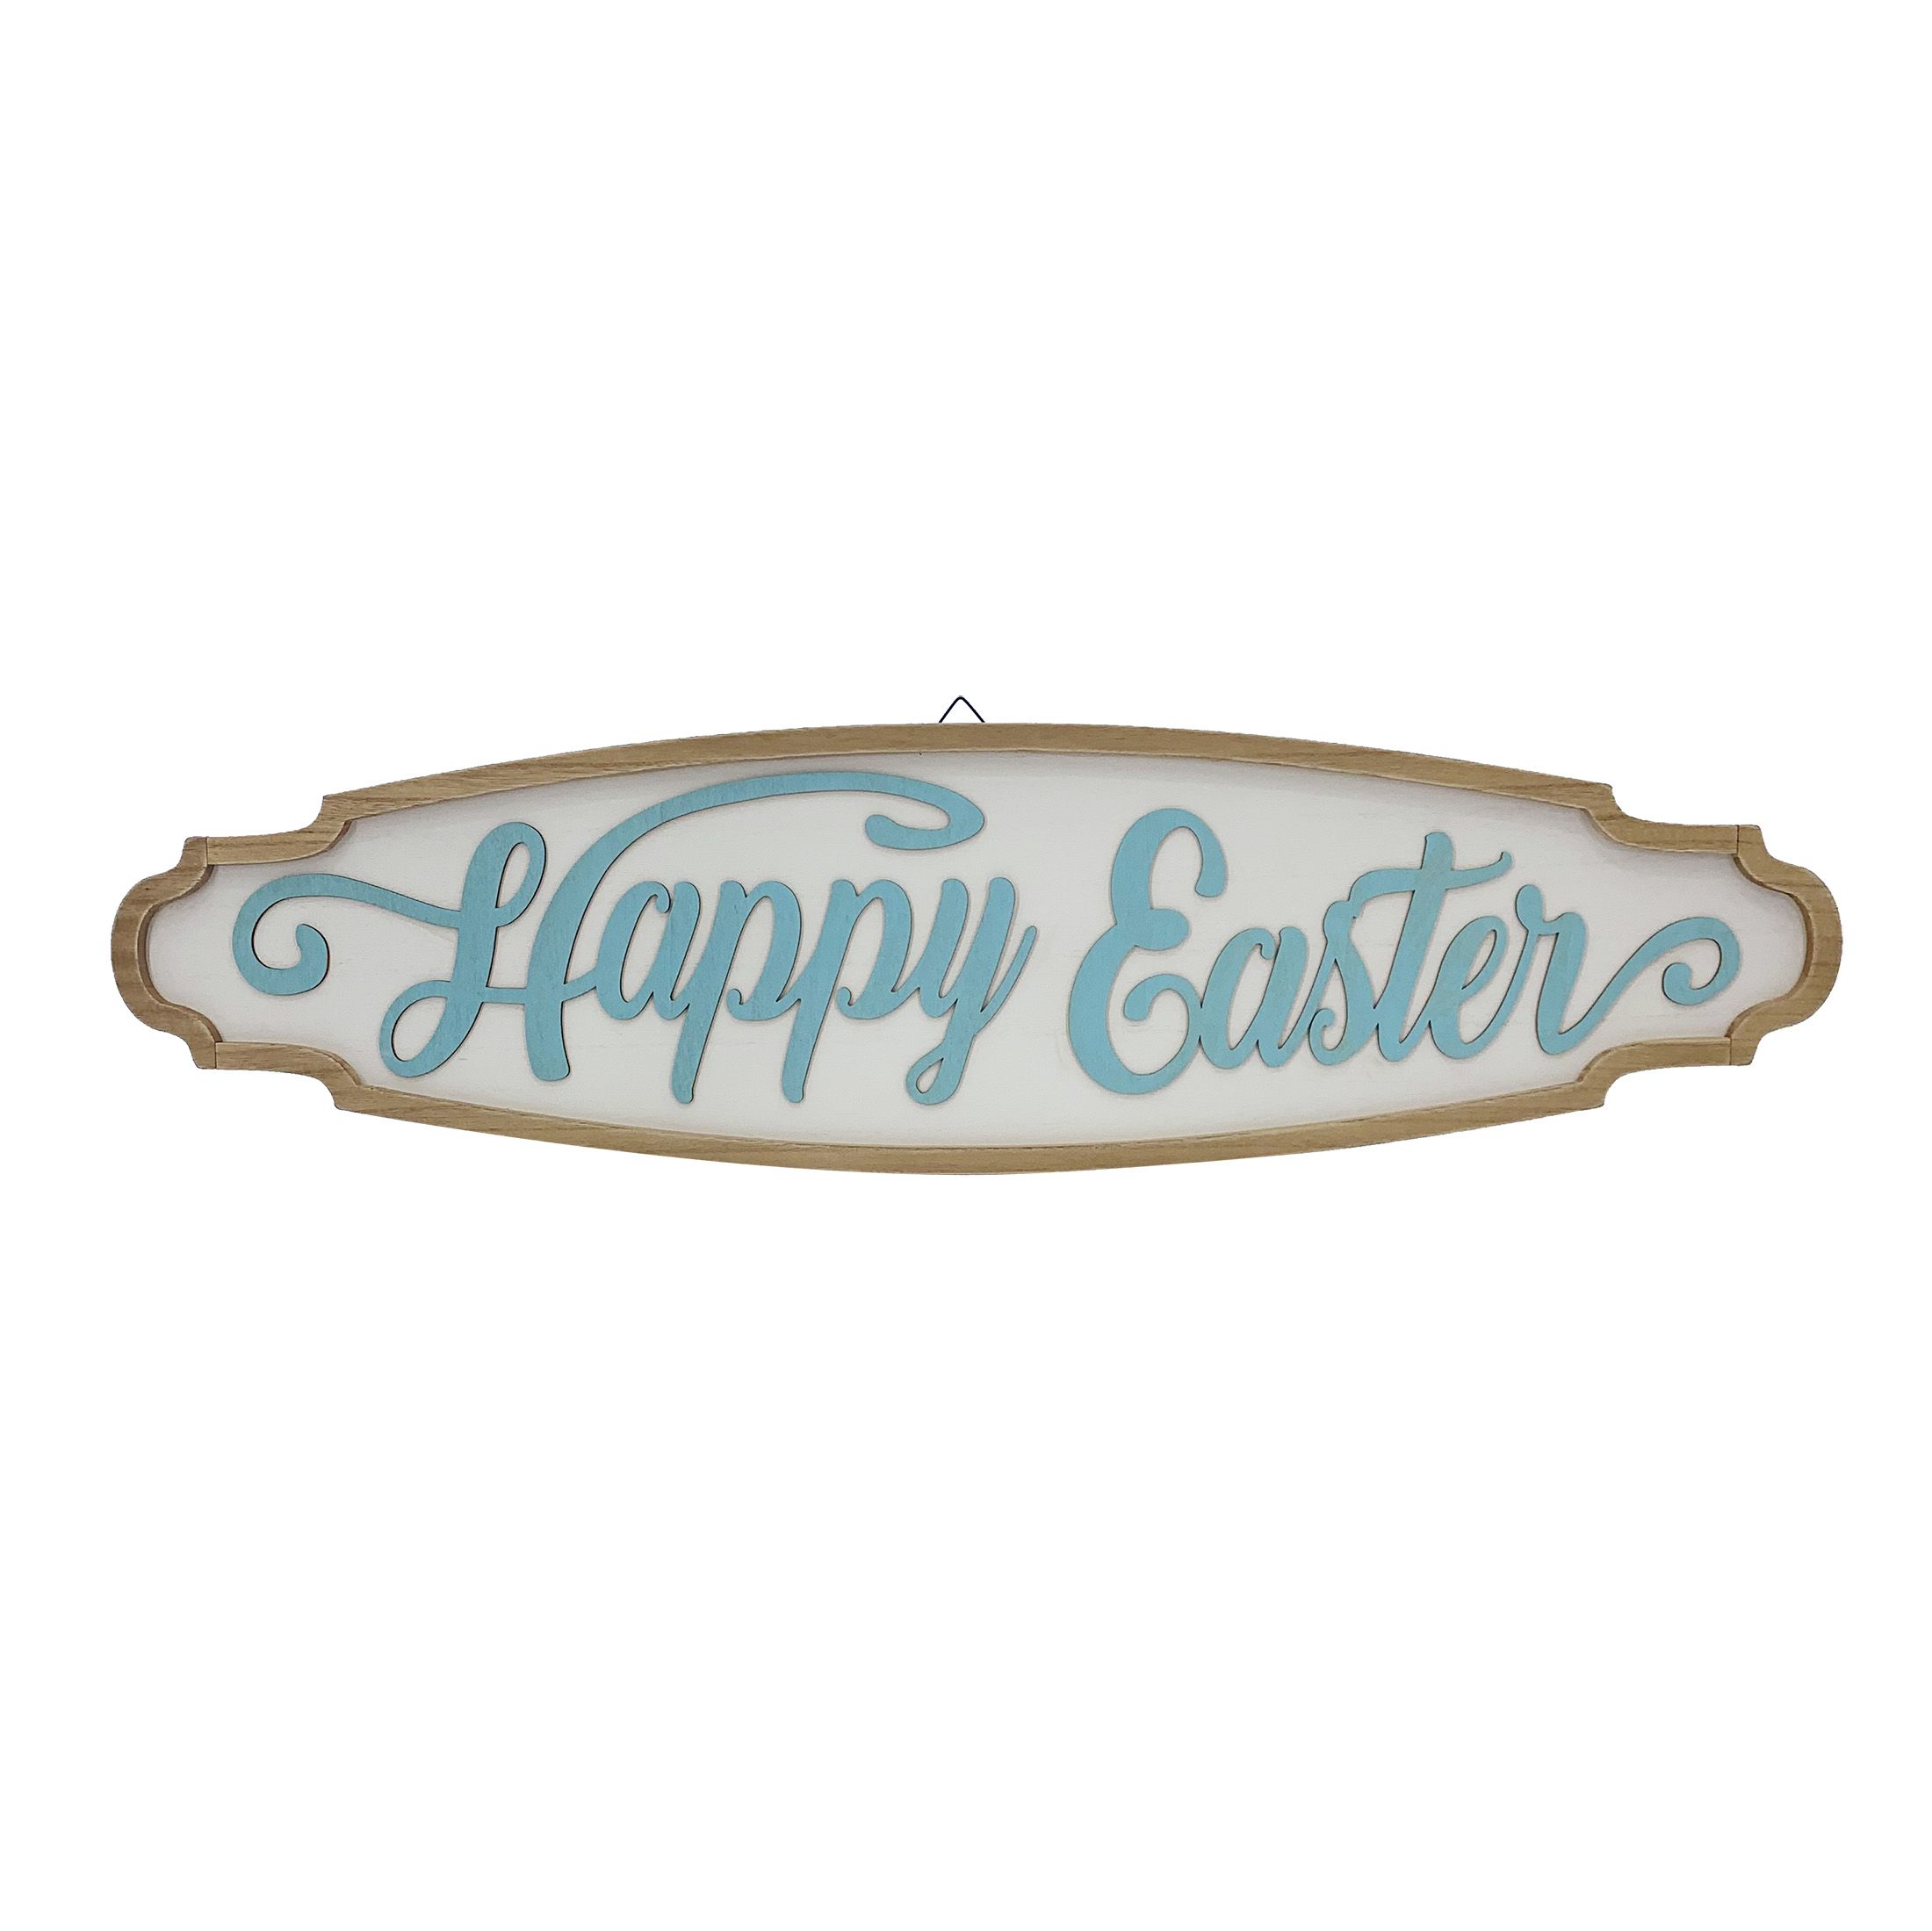 Way To Celebrate Easter Fancy Framed Easter 35.75" Sign Decoration | Walmart (US)